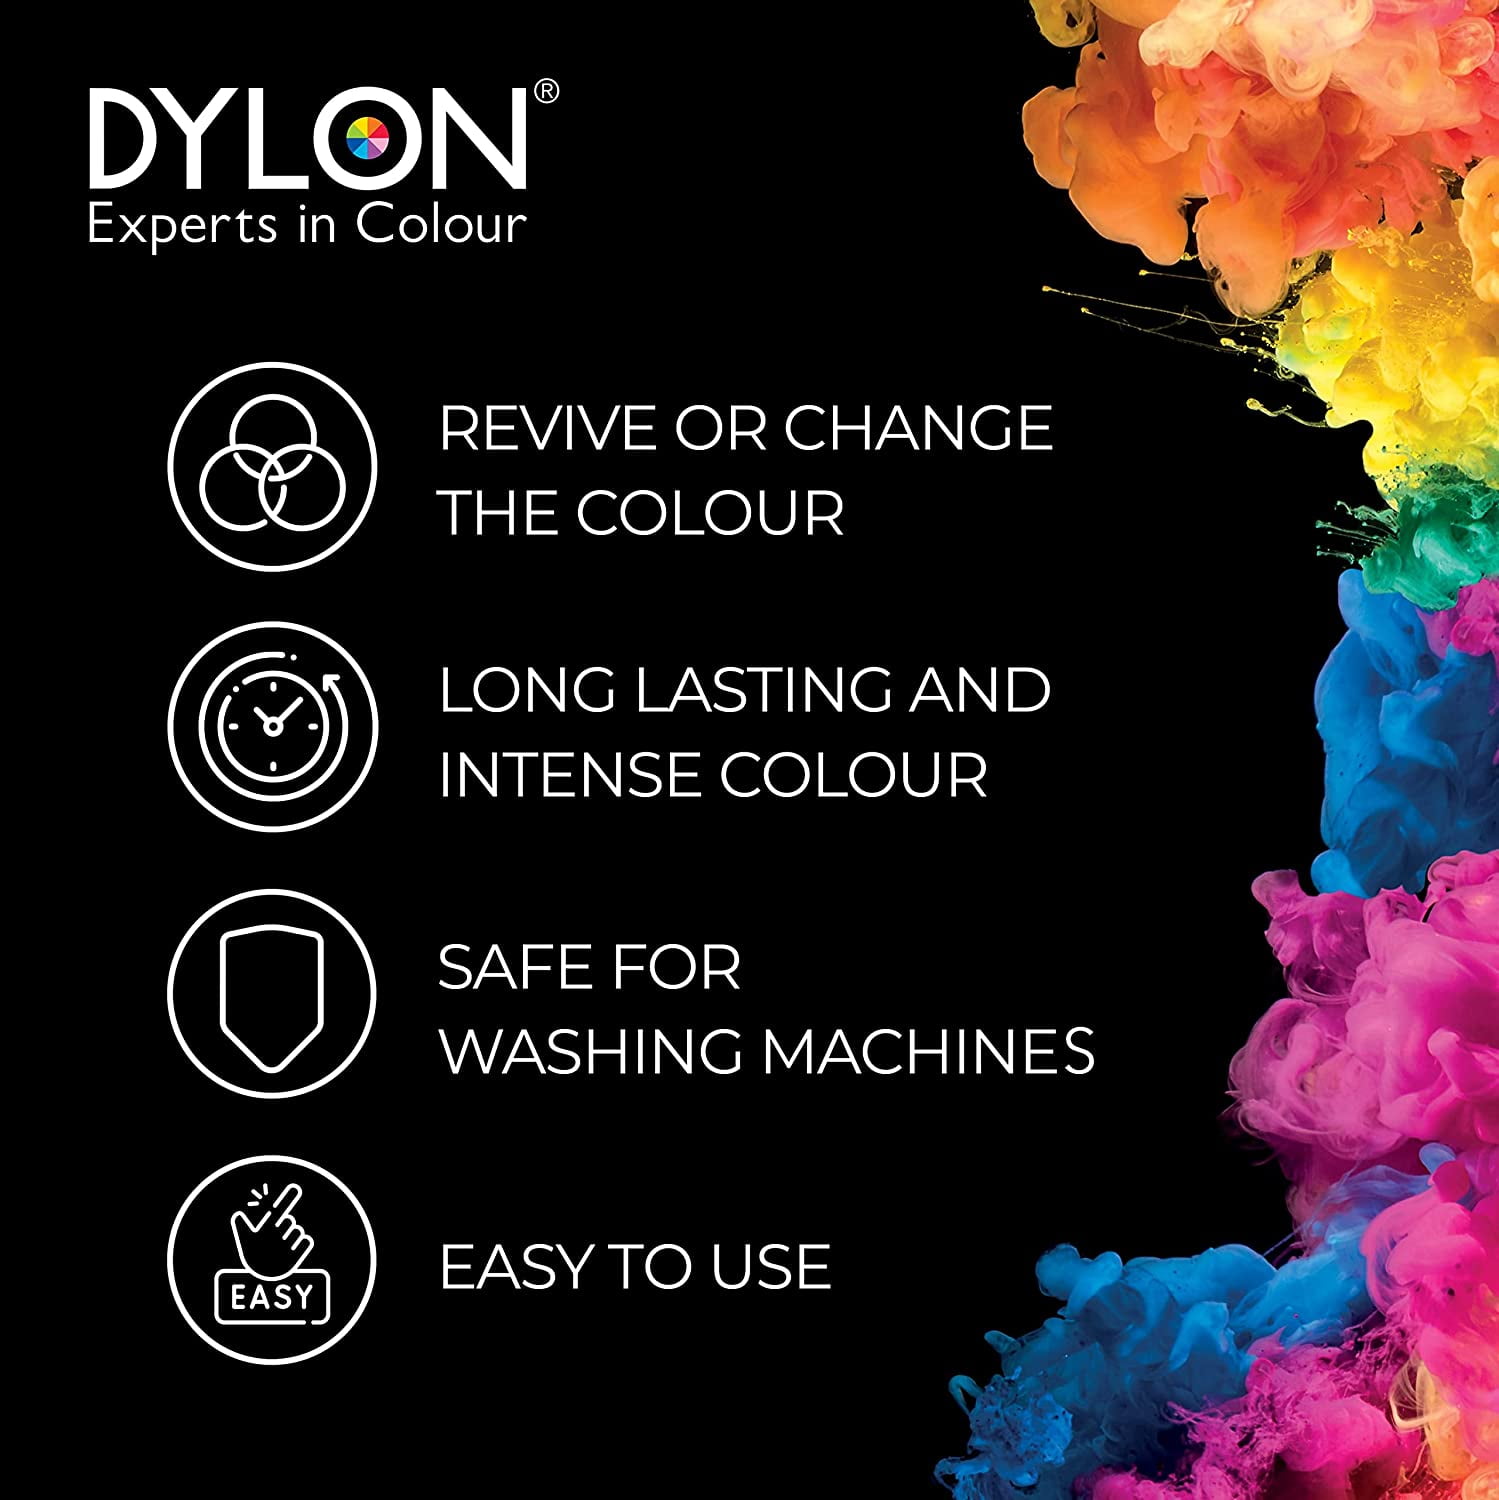 Dylon Review  Smoke Grey 